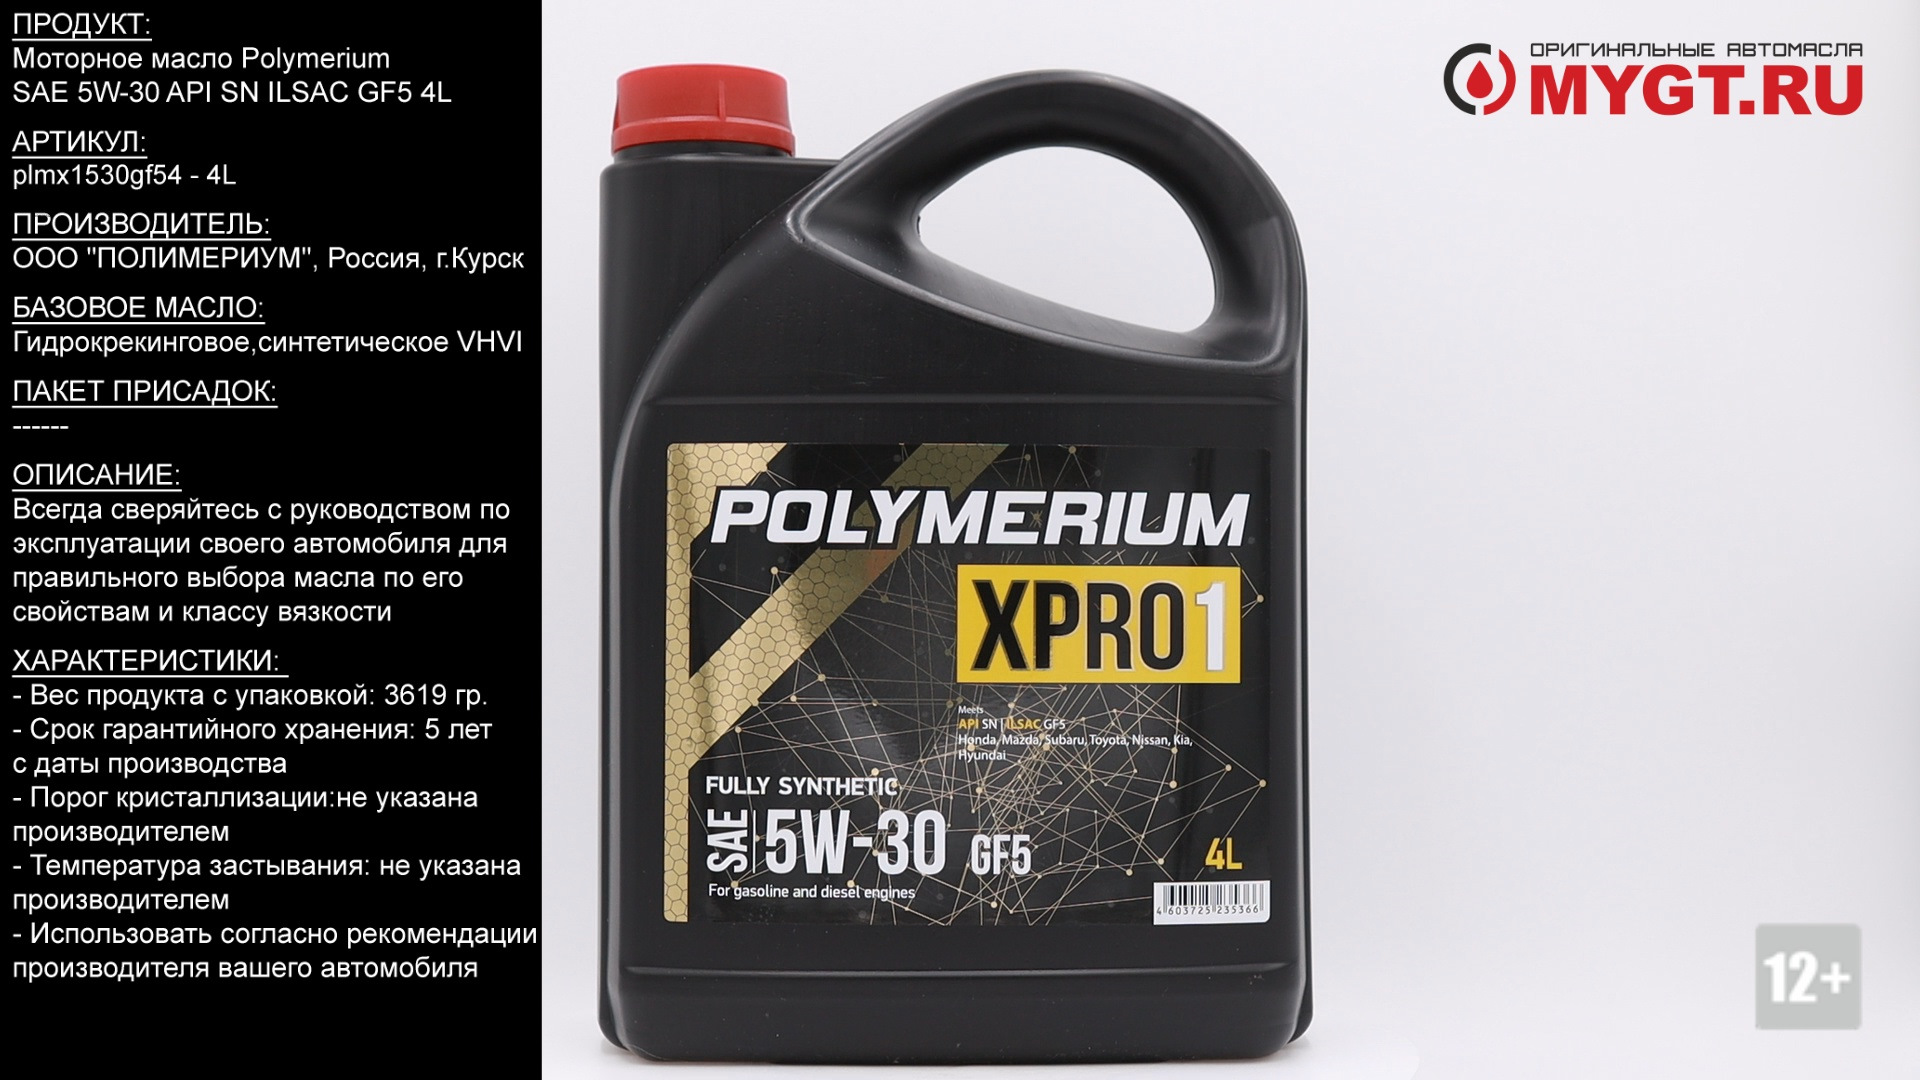 Масло полимериум цена. Полимериум 5w30 xpro1. Polymerium xpro2 5w-30 gf5. Моторное масло полимериум 5w30. Polymerium Pro 5w-30 a5 SN 4l артикул.